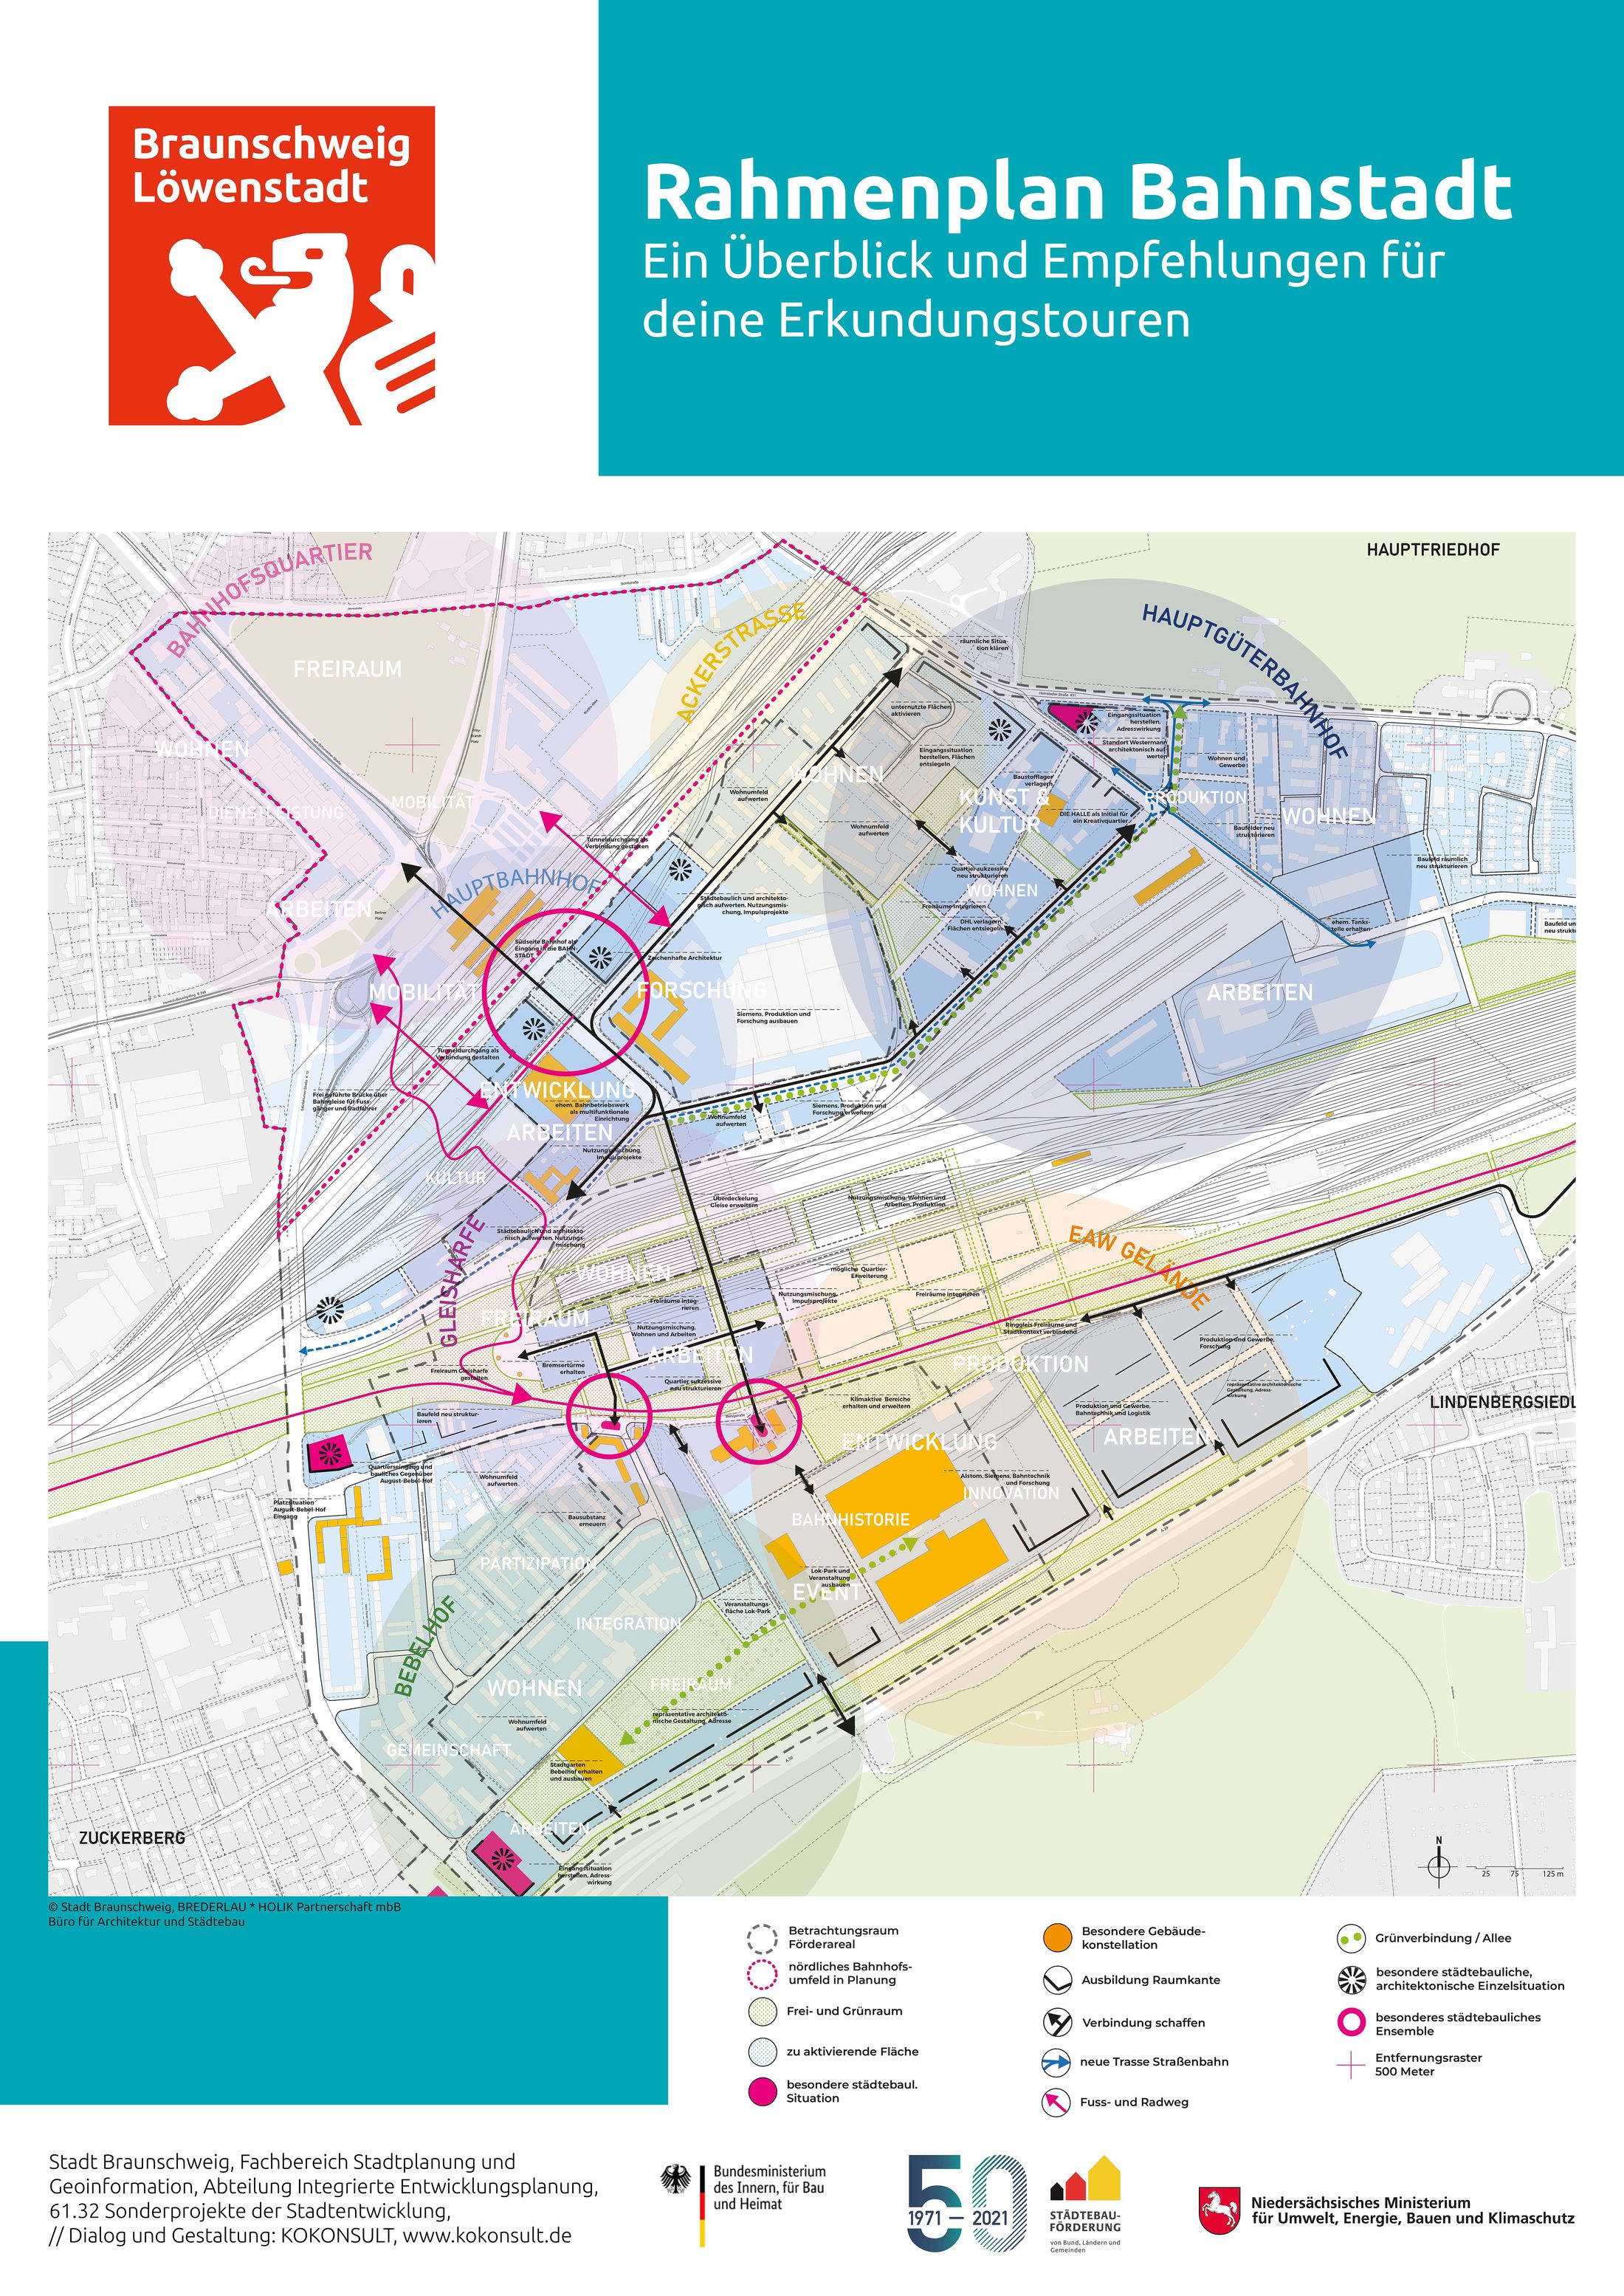 Plakat "Rahmenplanung Bahnstadt - Ein Überblick und Empfehlungen für deine Erkundungstouren""